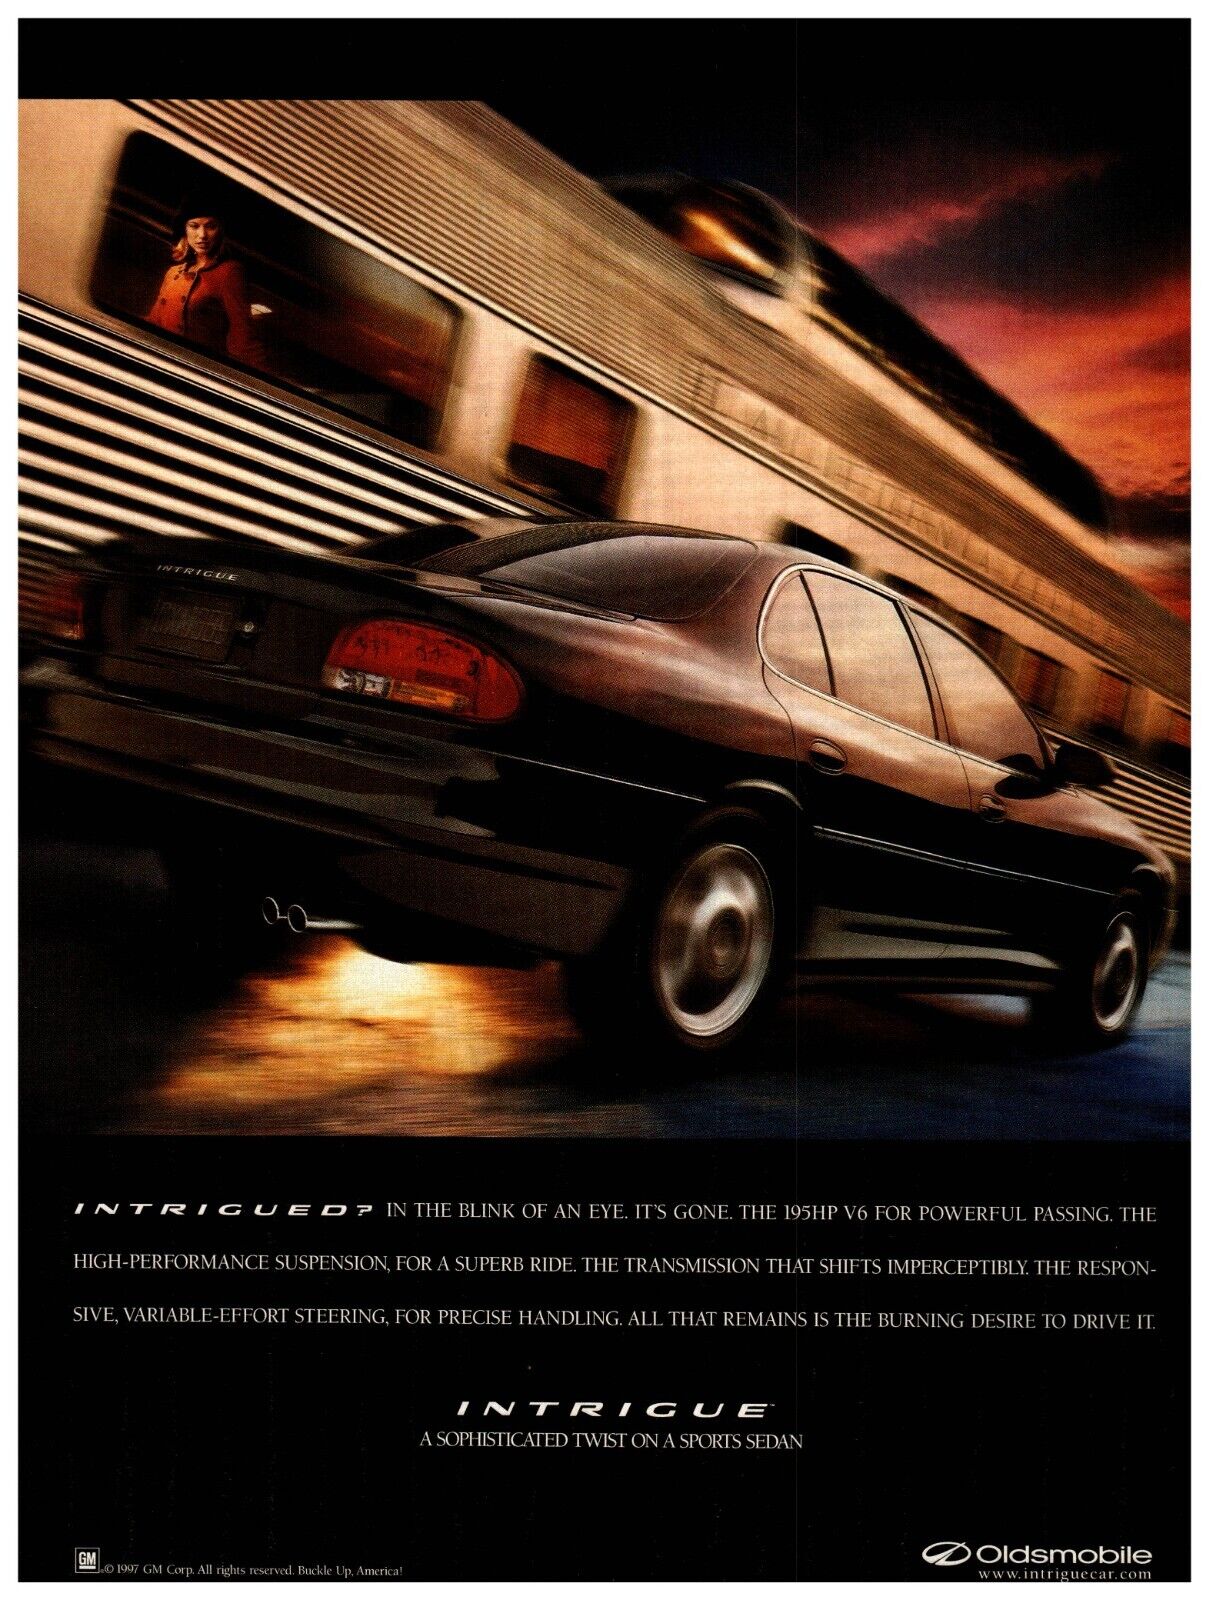 1997 Oldsmobile Intrigue Sports Sedan Car - People Magazine Vintage Print Ad